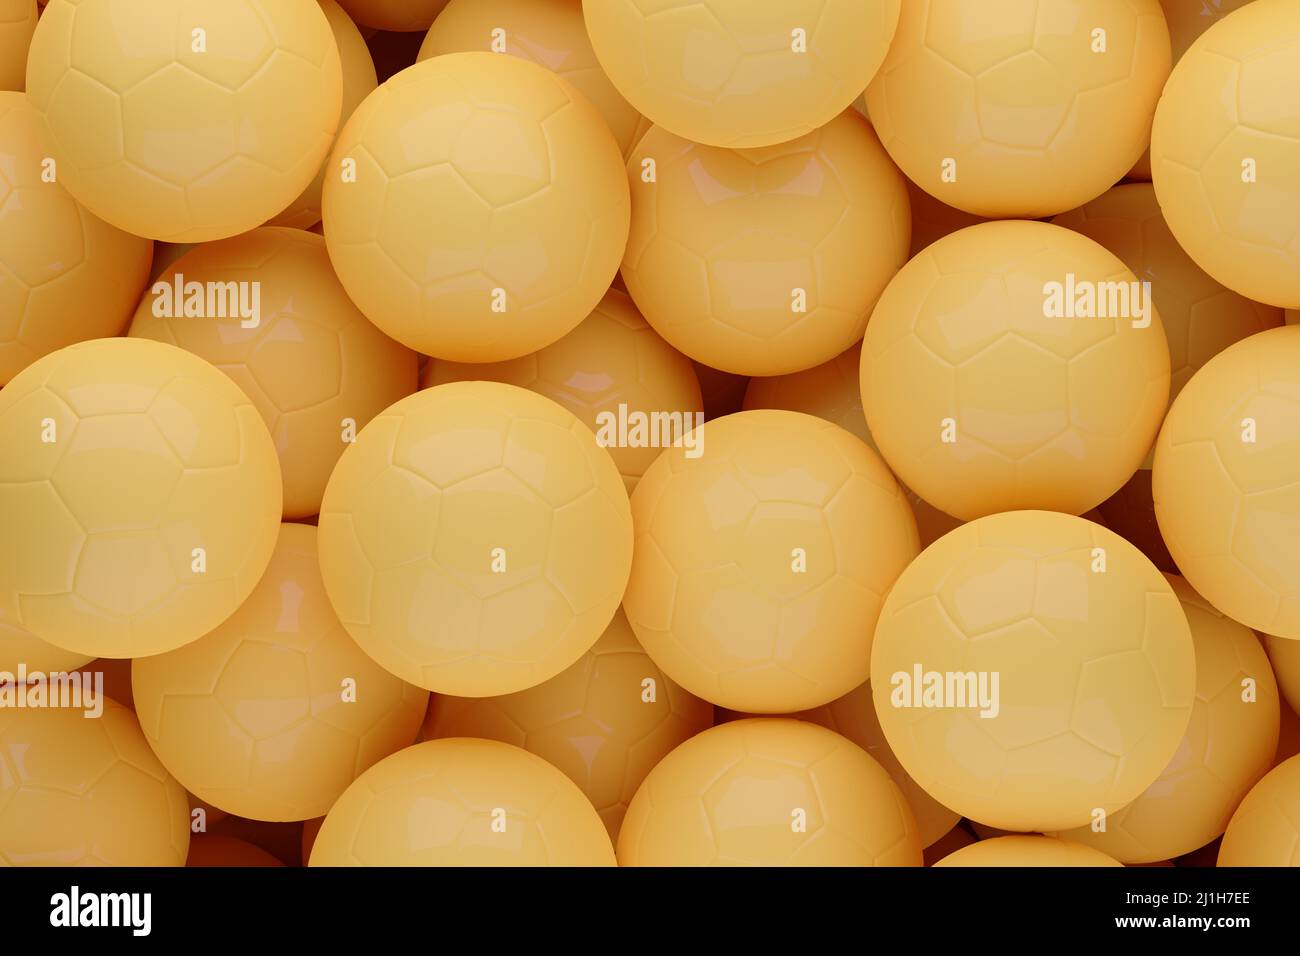 Fondo de pelotas de fútbol amarillas. ilustración 3d. Foto de stock